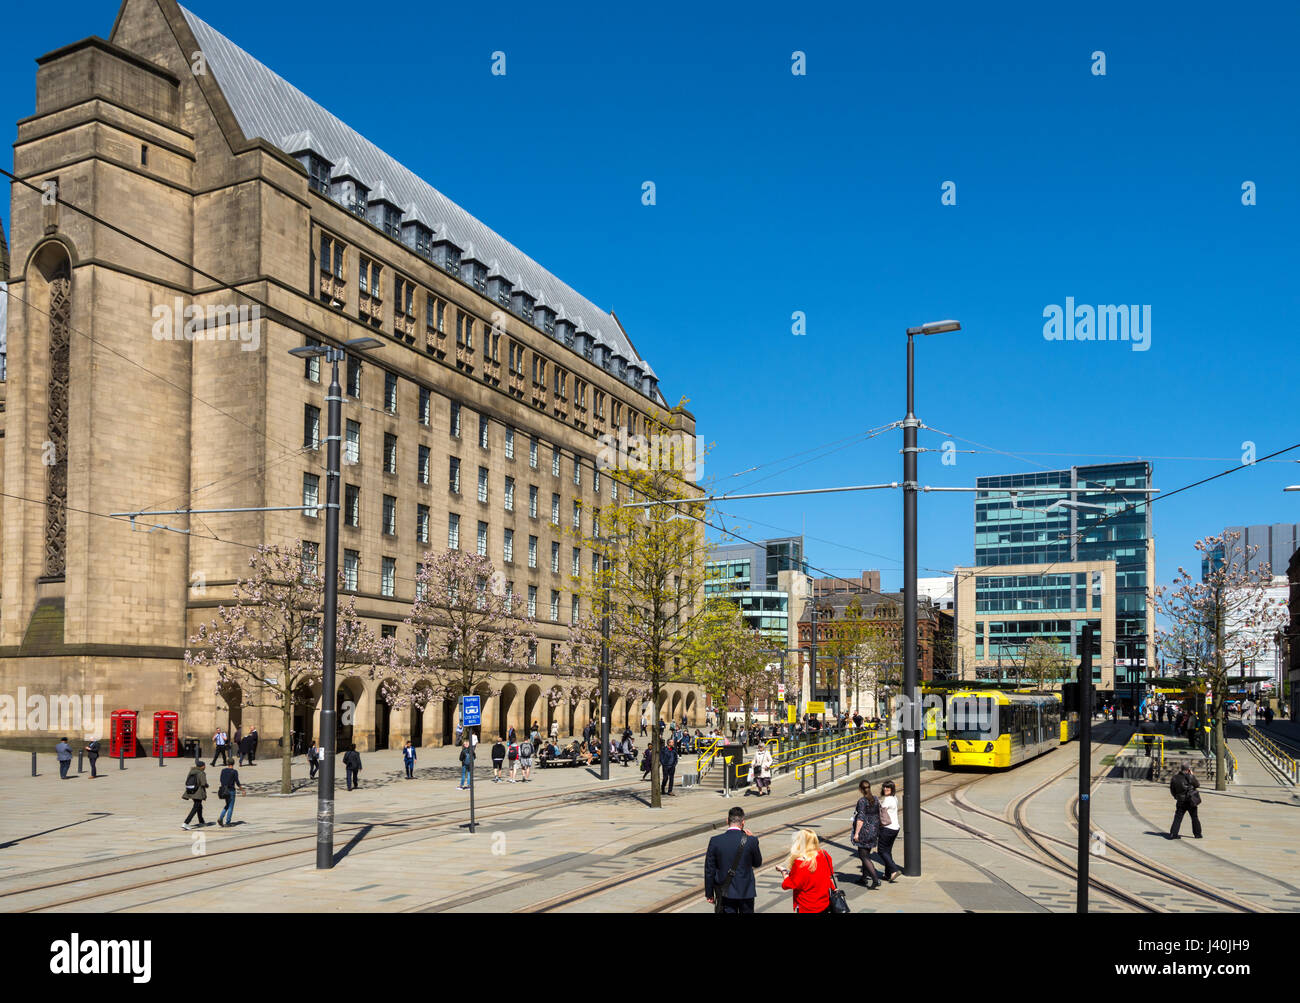 Il municipio edificio di estensione e il Metrolink fermata del tram, Piazza San Pietro, Manchester, Inghilterra, Regno Unito Foto Stock